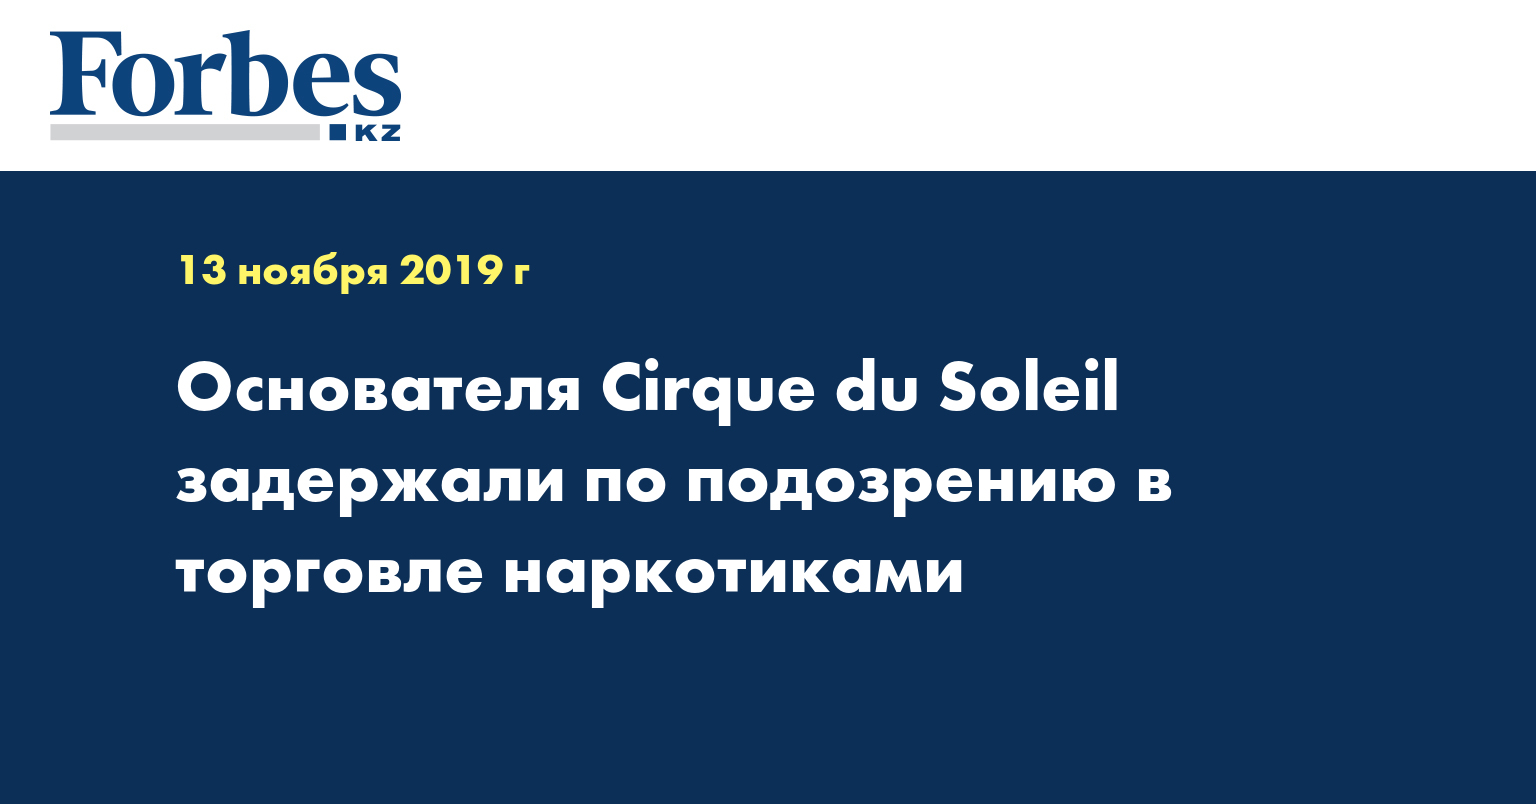 Основателя Cirque du Soleil задержали по подозрению в торговле наркотиками